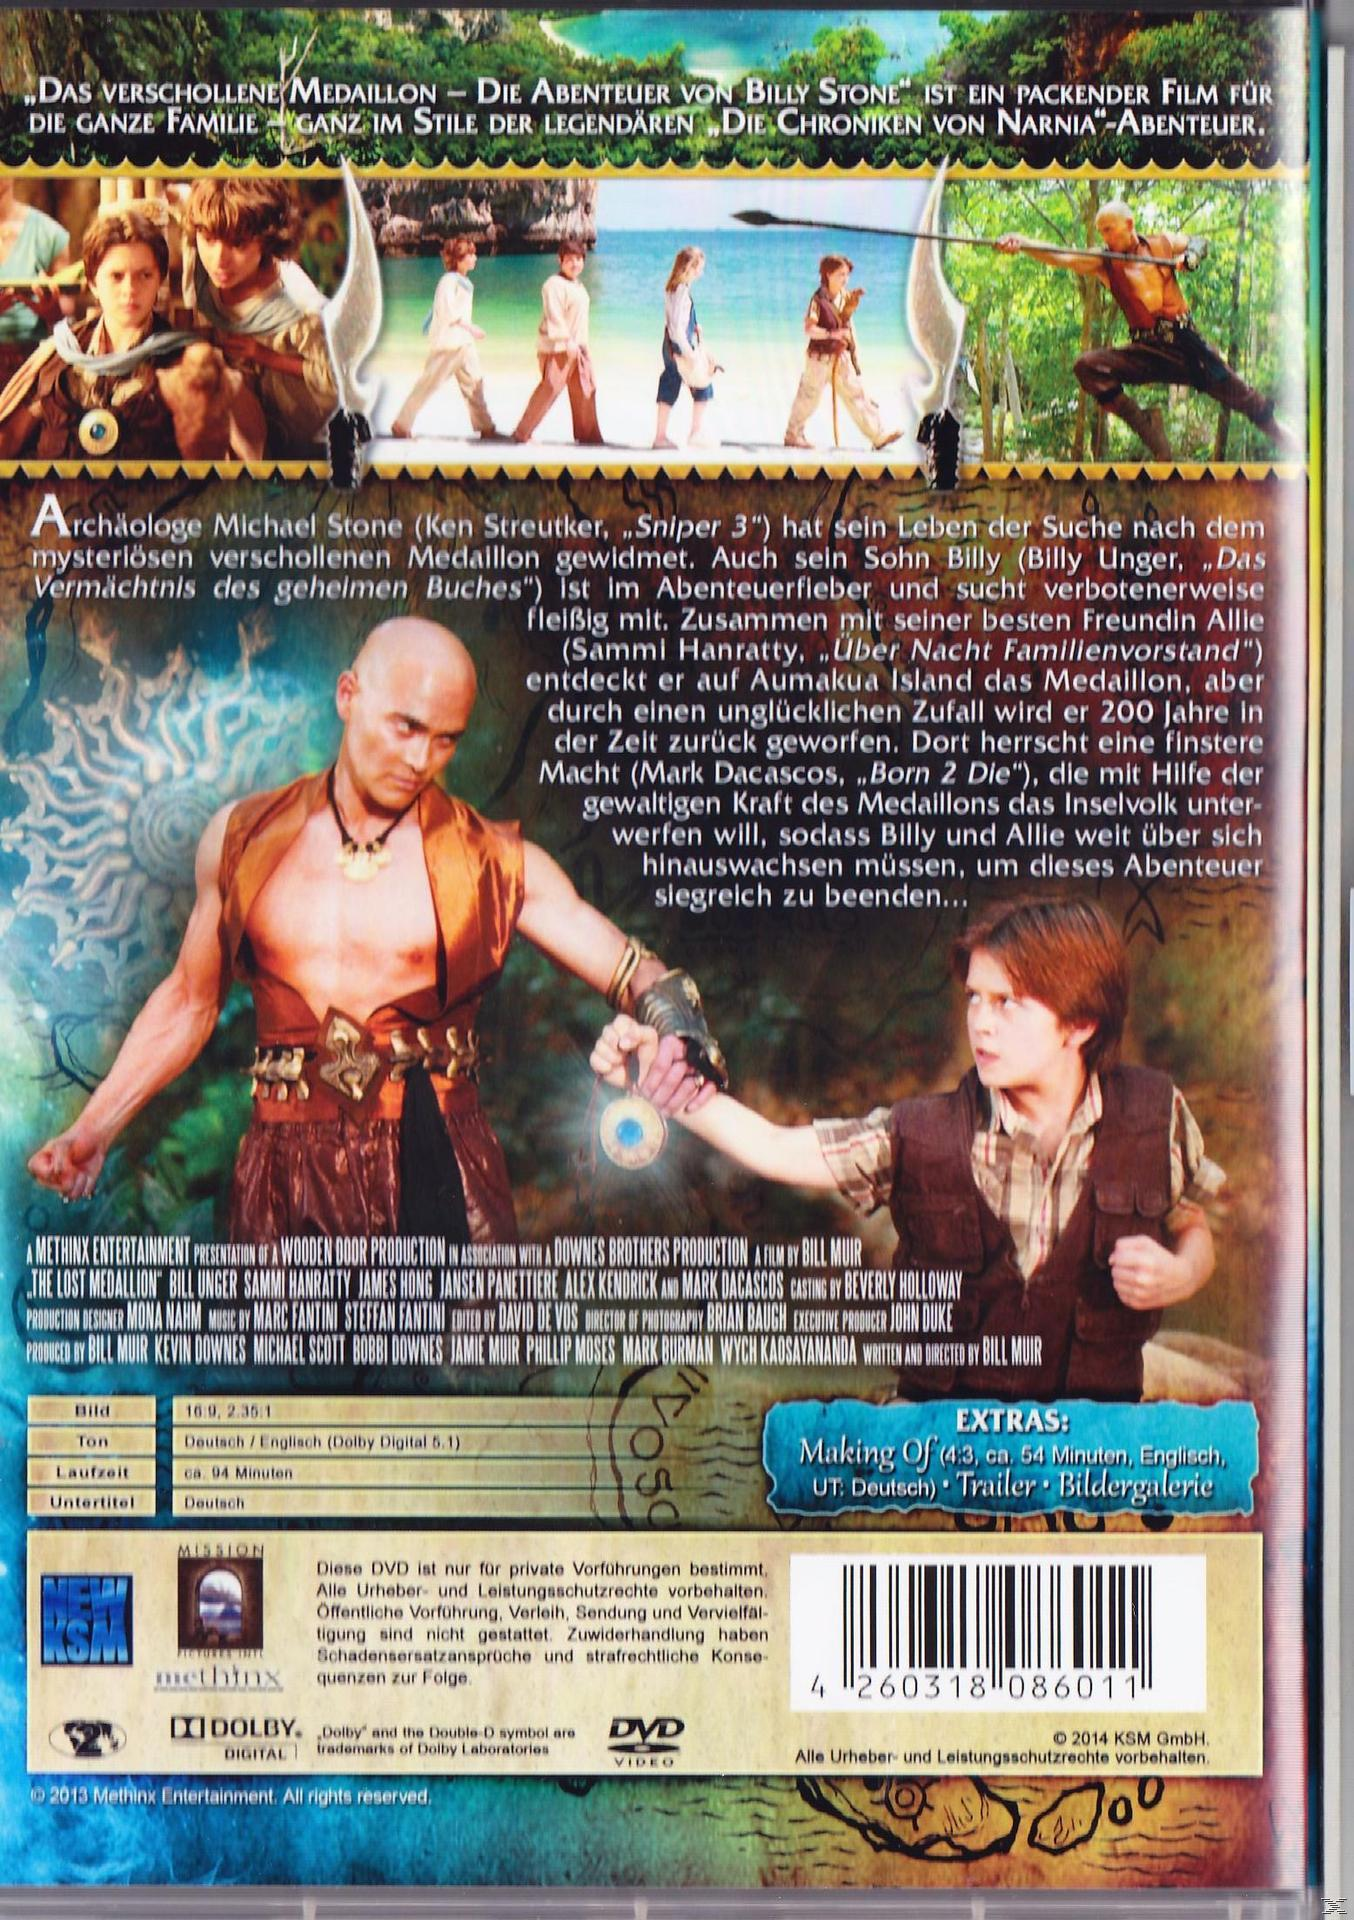 Stone Das – Die verschollene Abenteuer Medaillon Billy von DVD